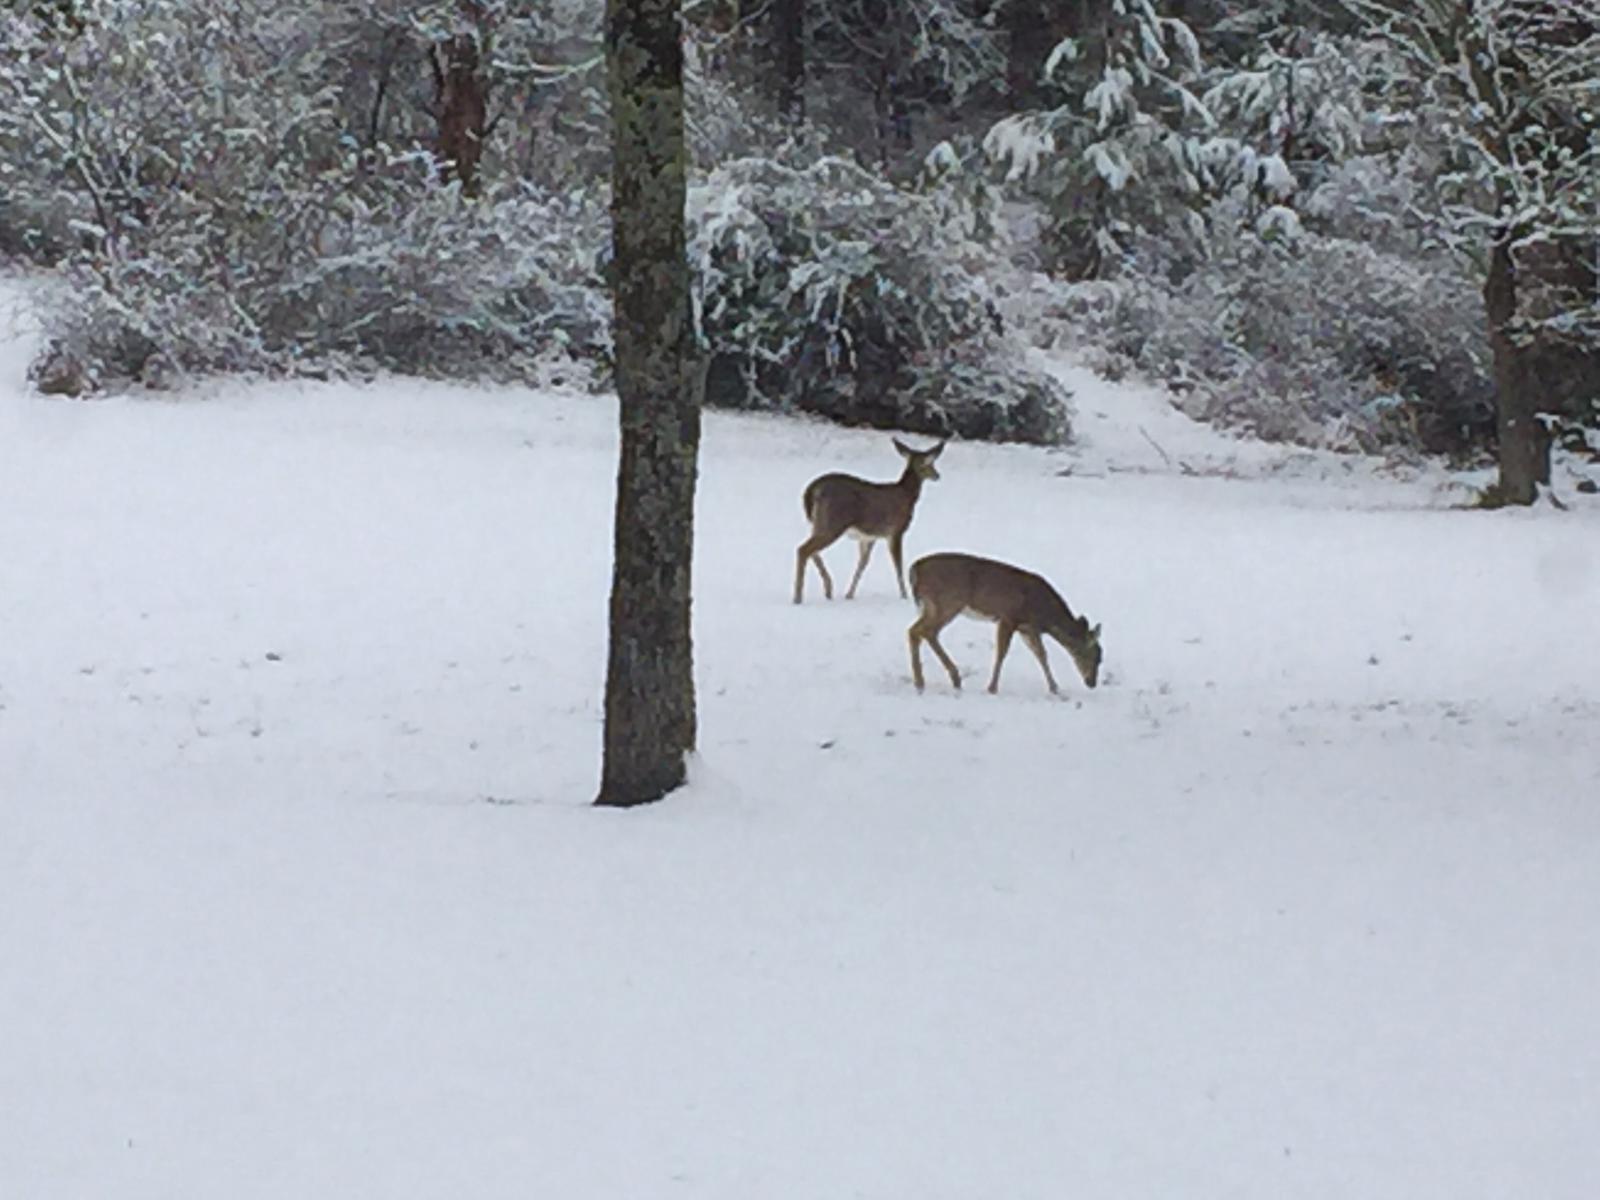 Deer in Winter